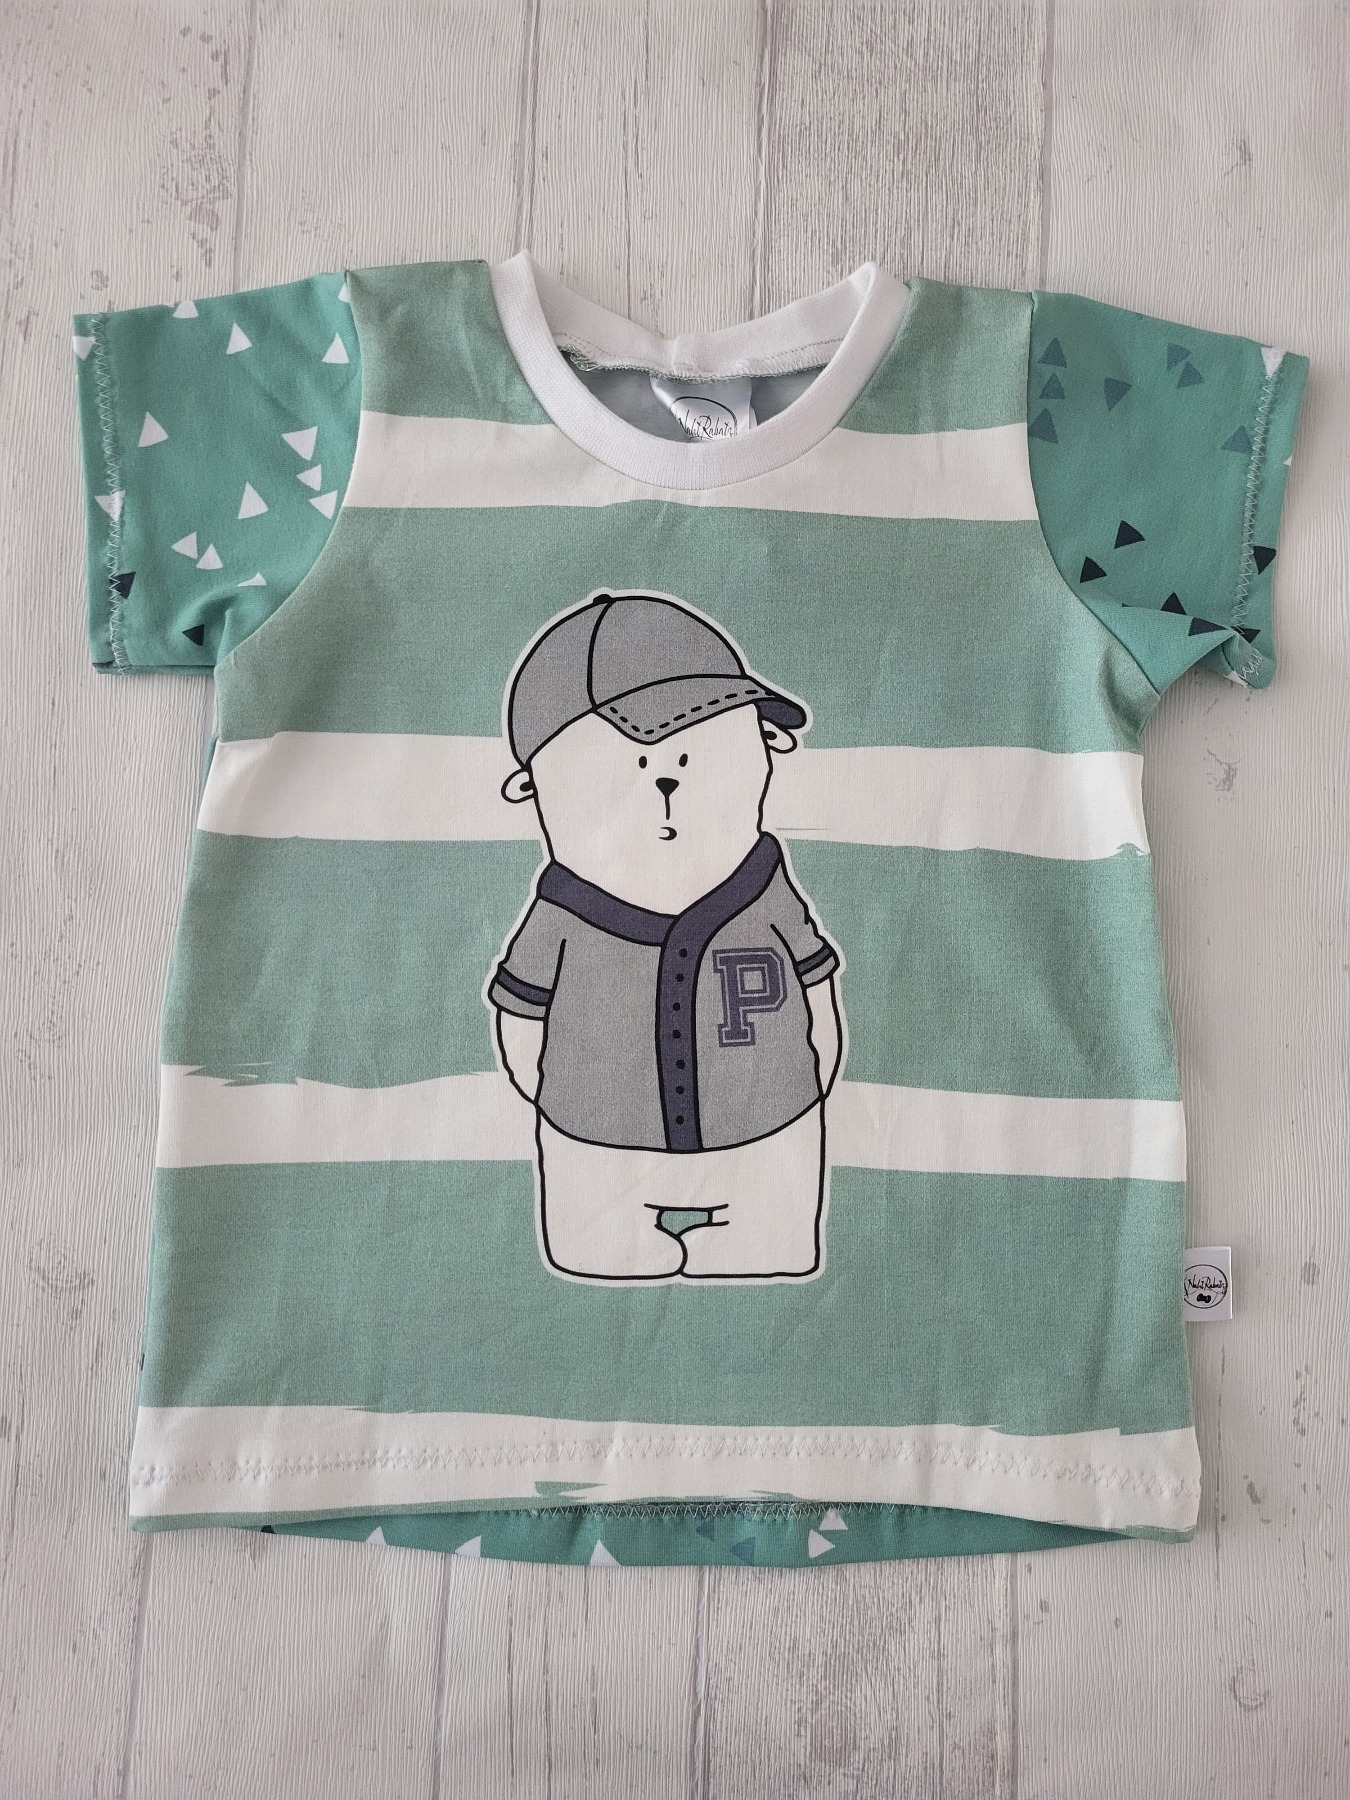 Sofortkauf Handmade T-Shirt kurzarm Bär mint Gr. 92 von NahtRabatz